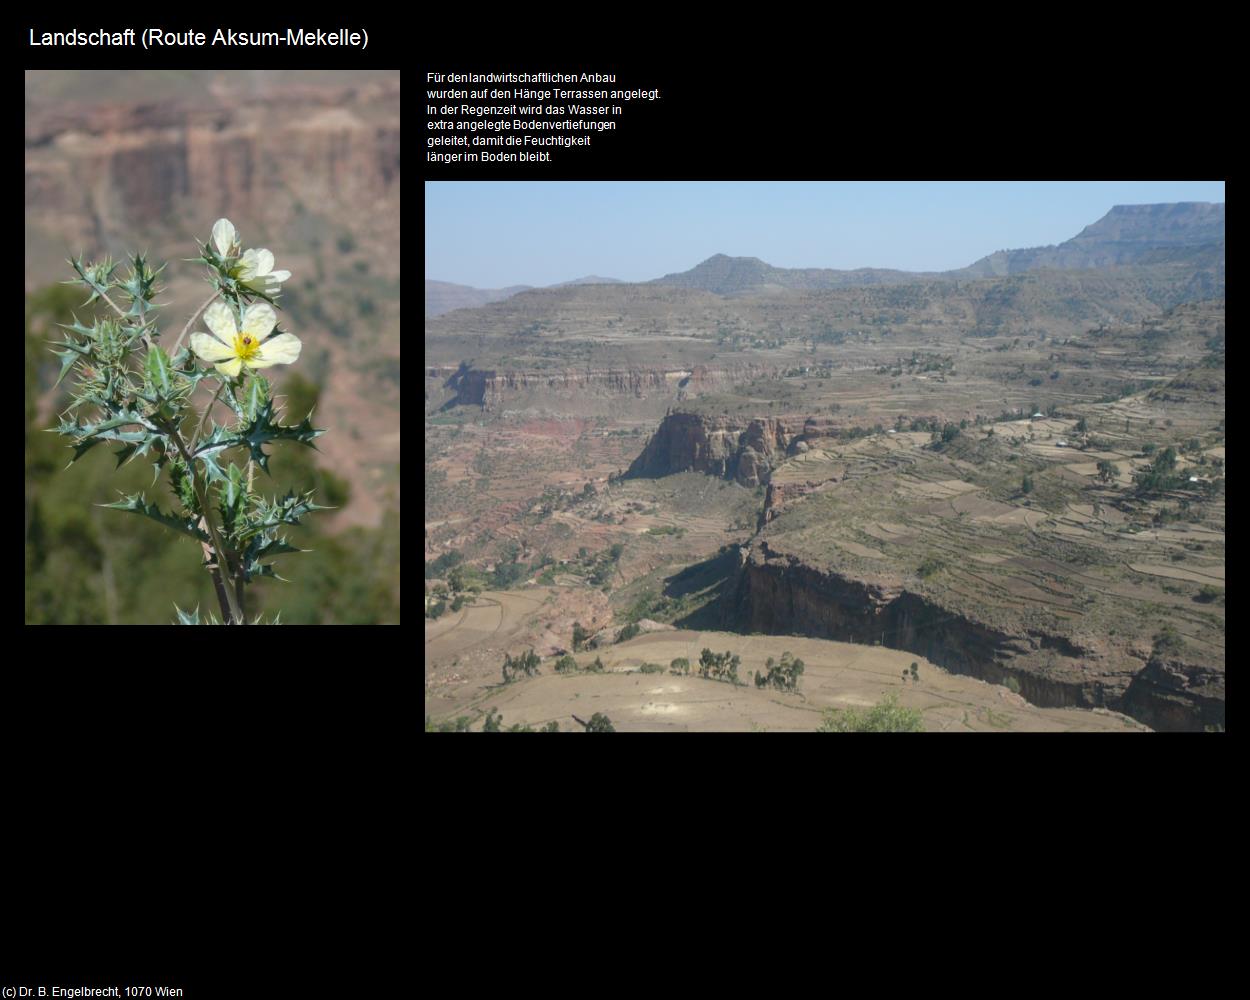 Landschaft (Route Aksum-Mekelle) in Äthiopien